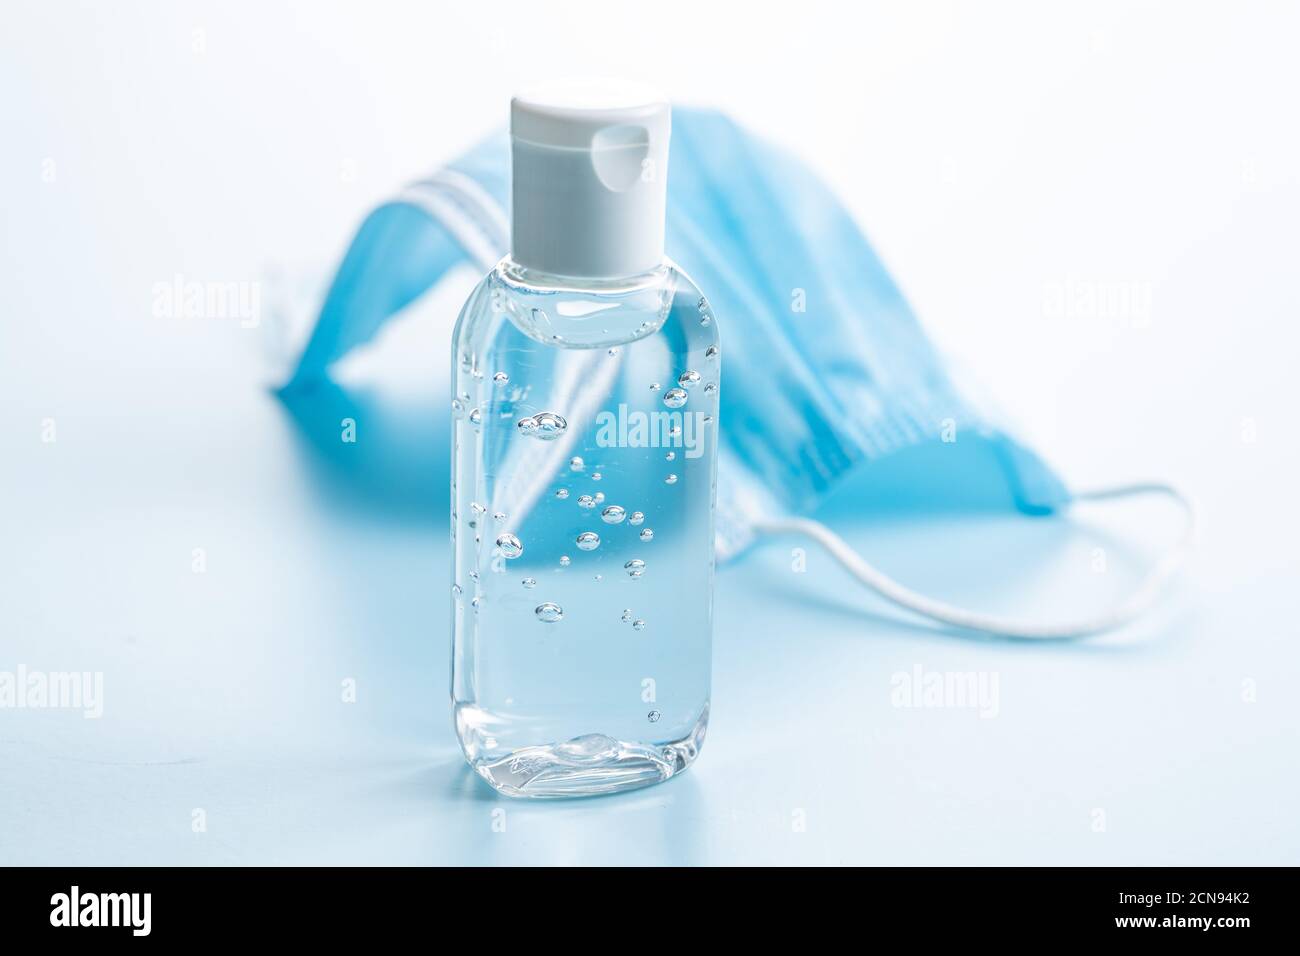 Gel antibactérien pour les mains et masques sur fond bleu. Protection contre les coronavirus. Banque D'Images